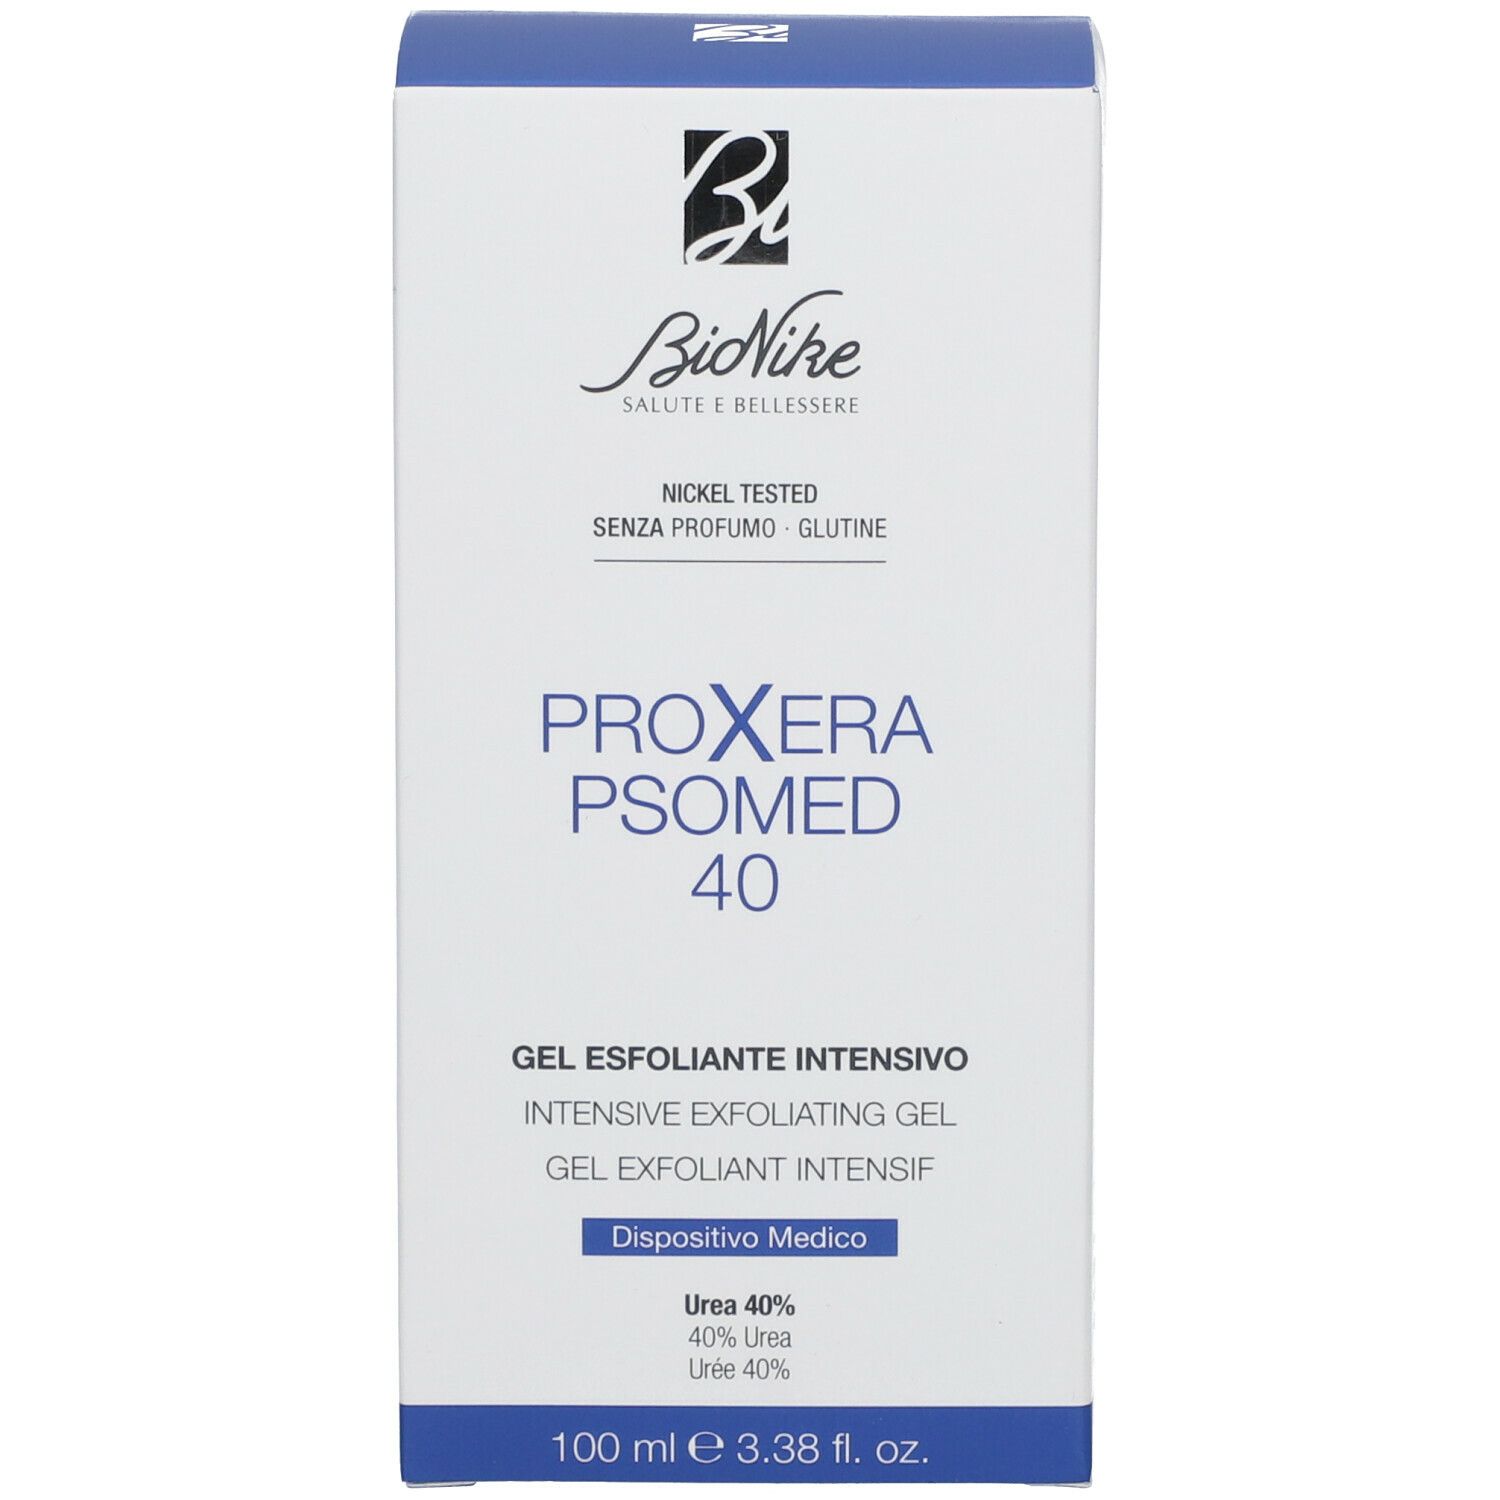 BioNike Proxera Posmed 40 Gel Esfoliante Intensivo Urea 40%